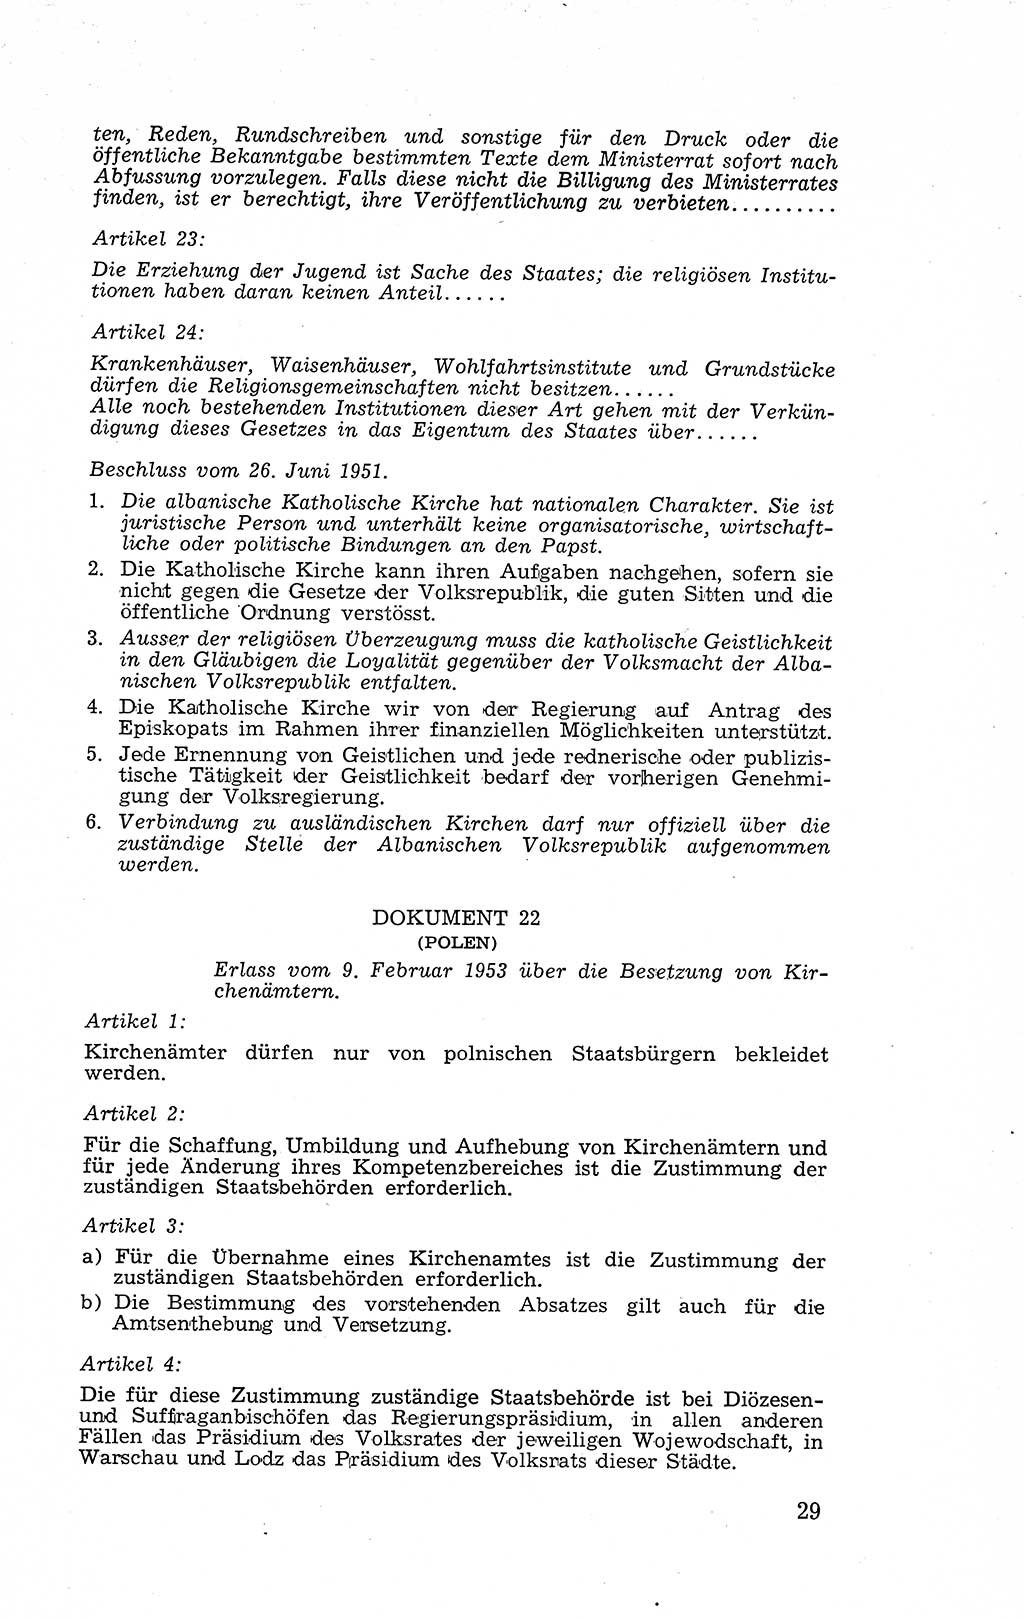 Recht in Fesseln, Dokumente, Internationale Juristen-Kommission [Bundesrepublik Deutschland (BRD)] 1955, Seite 29 (R. Dok. IJK BRD 1955, S. 29)